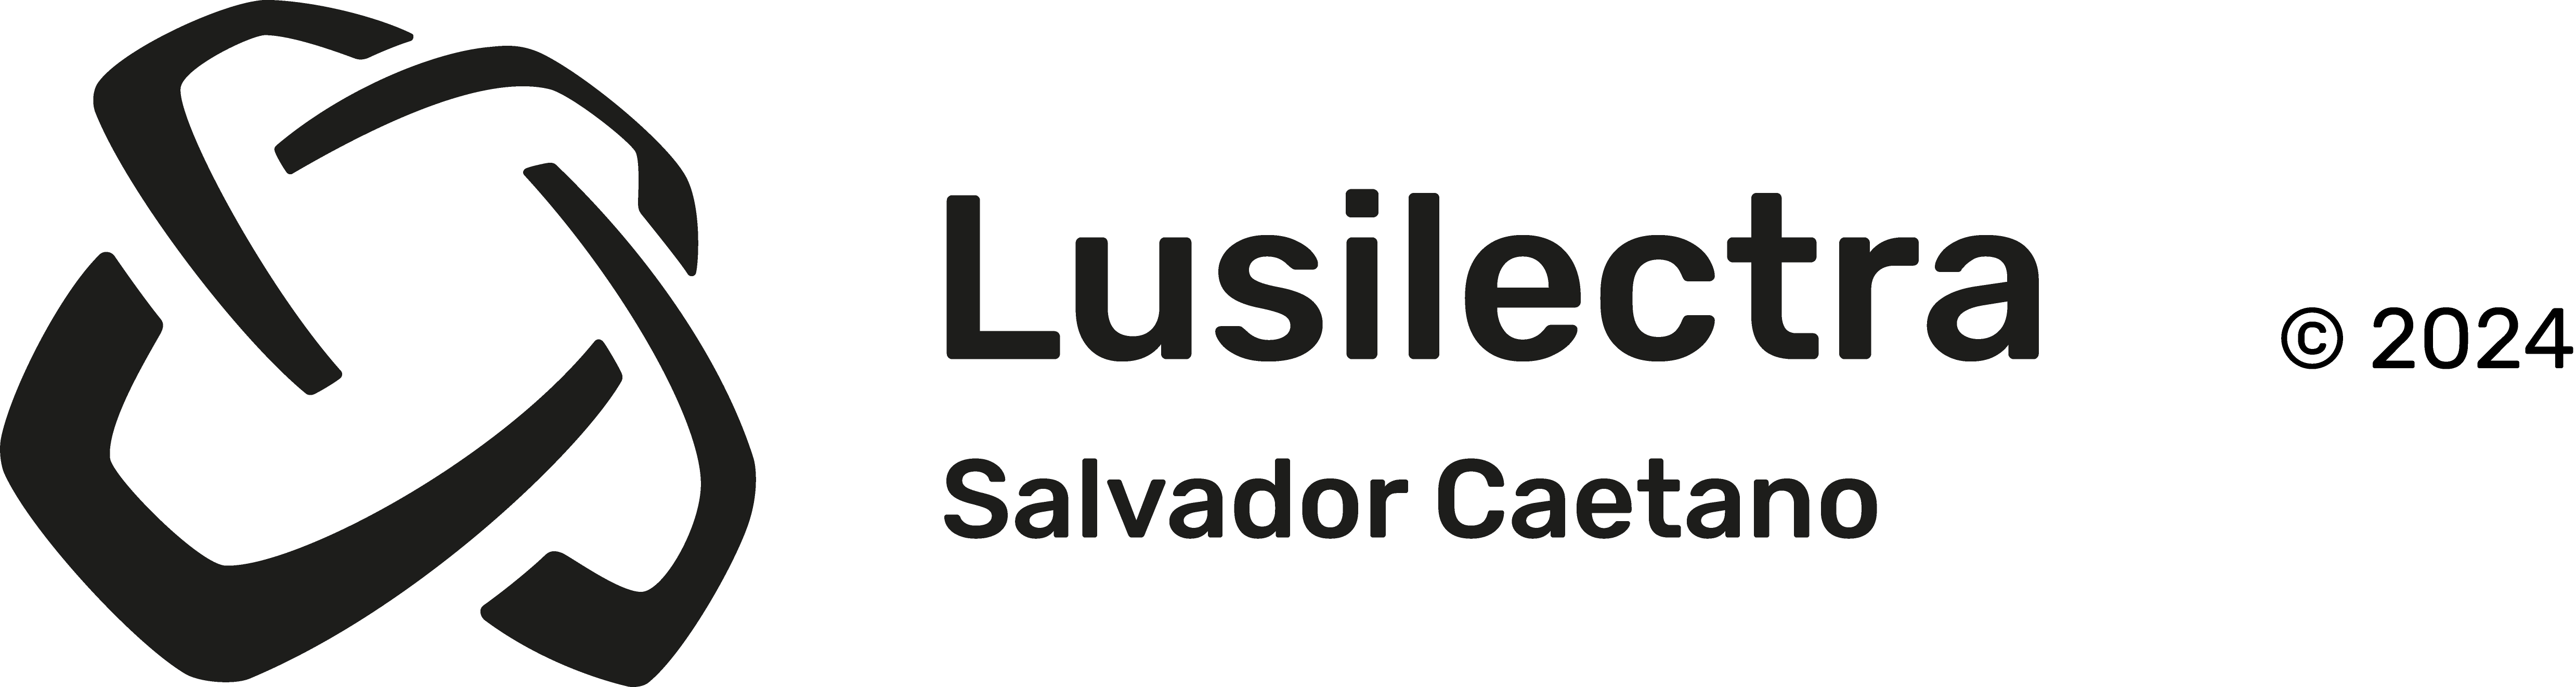 Logo Lusilectra A